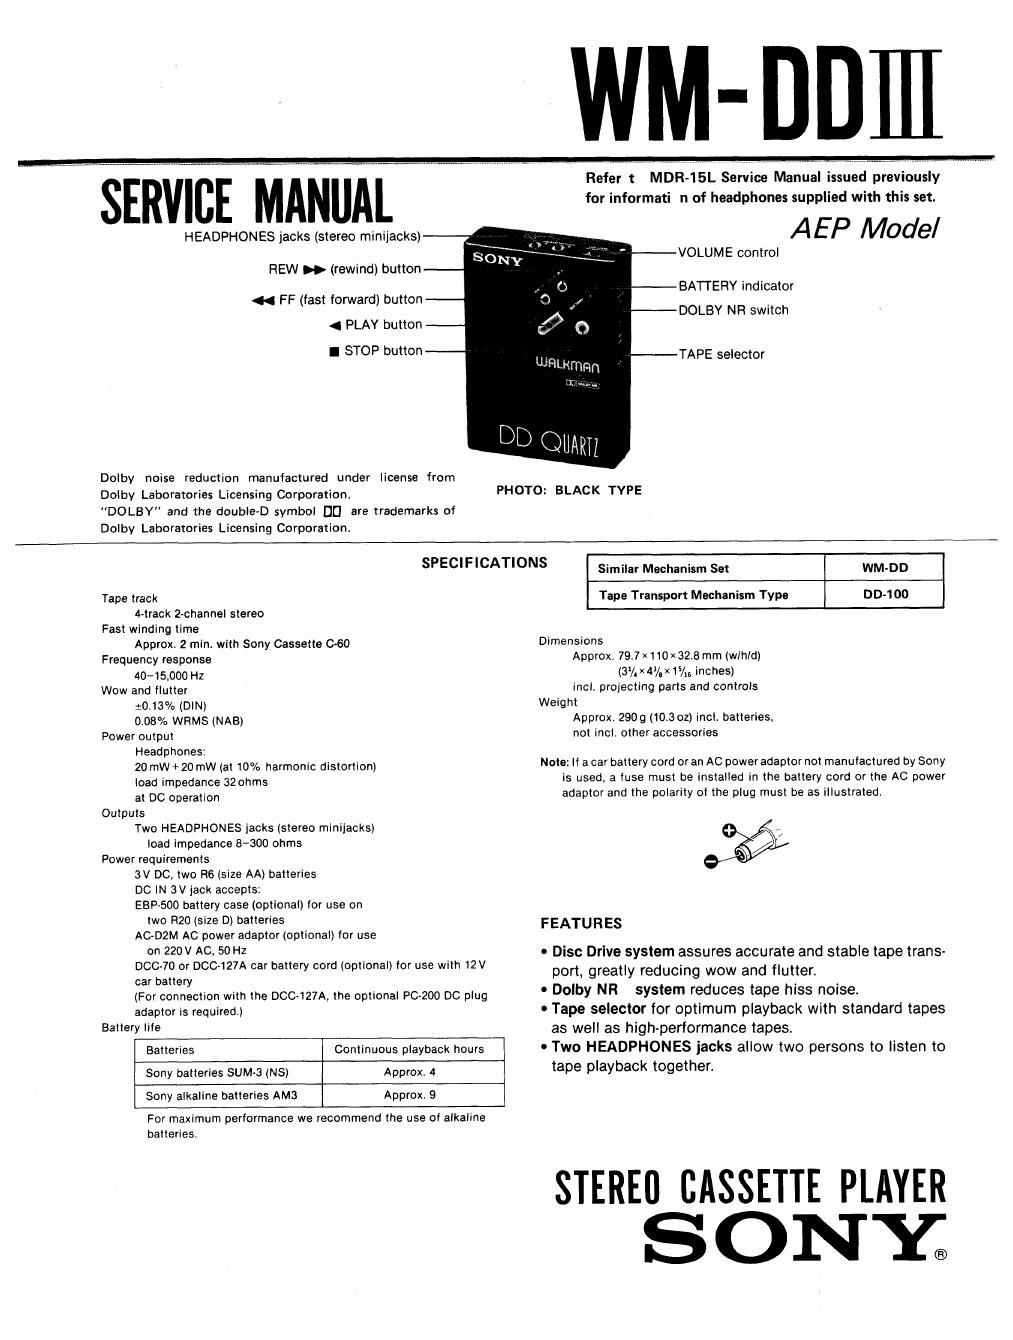 sony wm dd 3 service manual